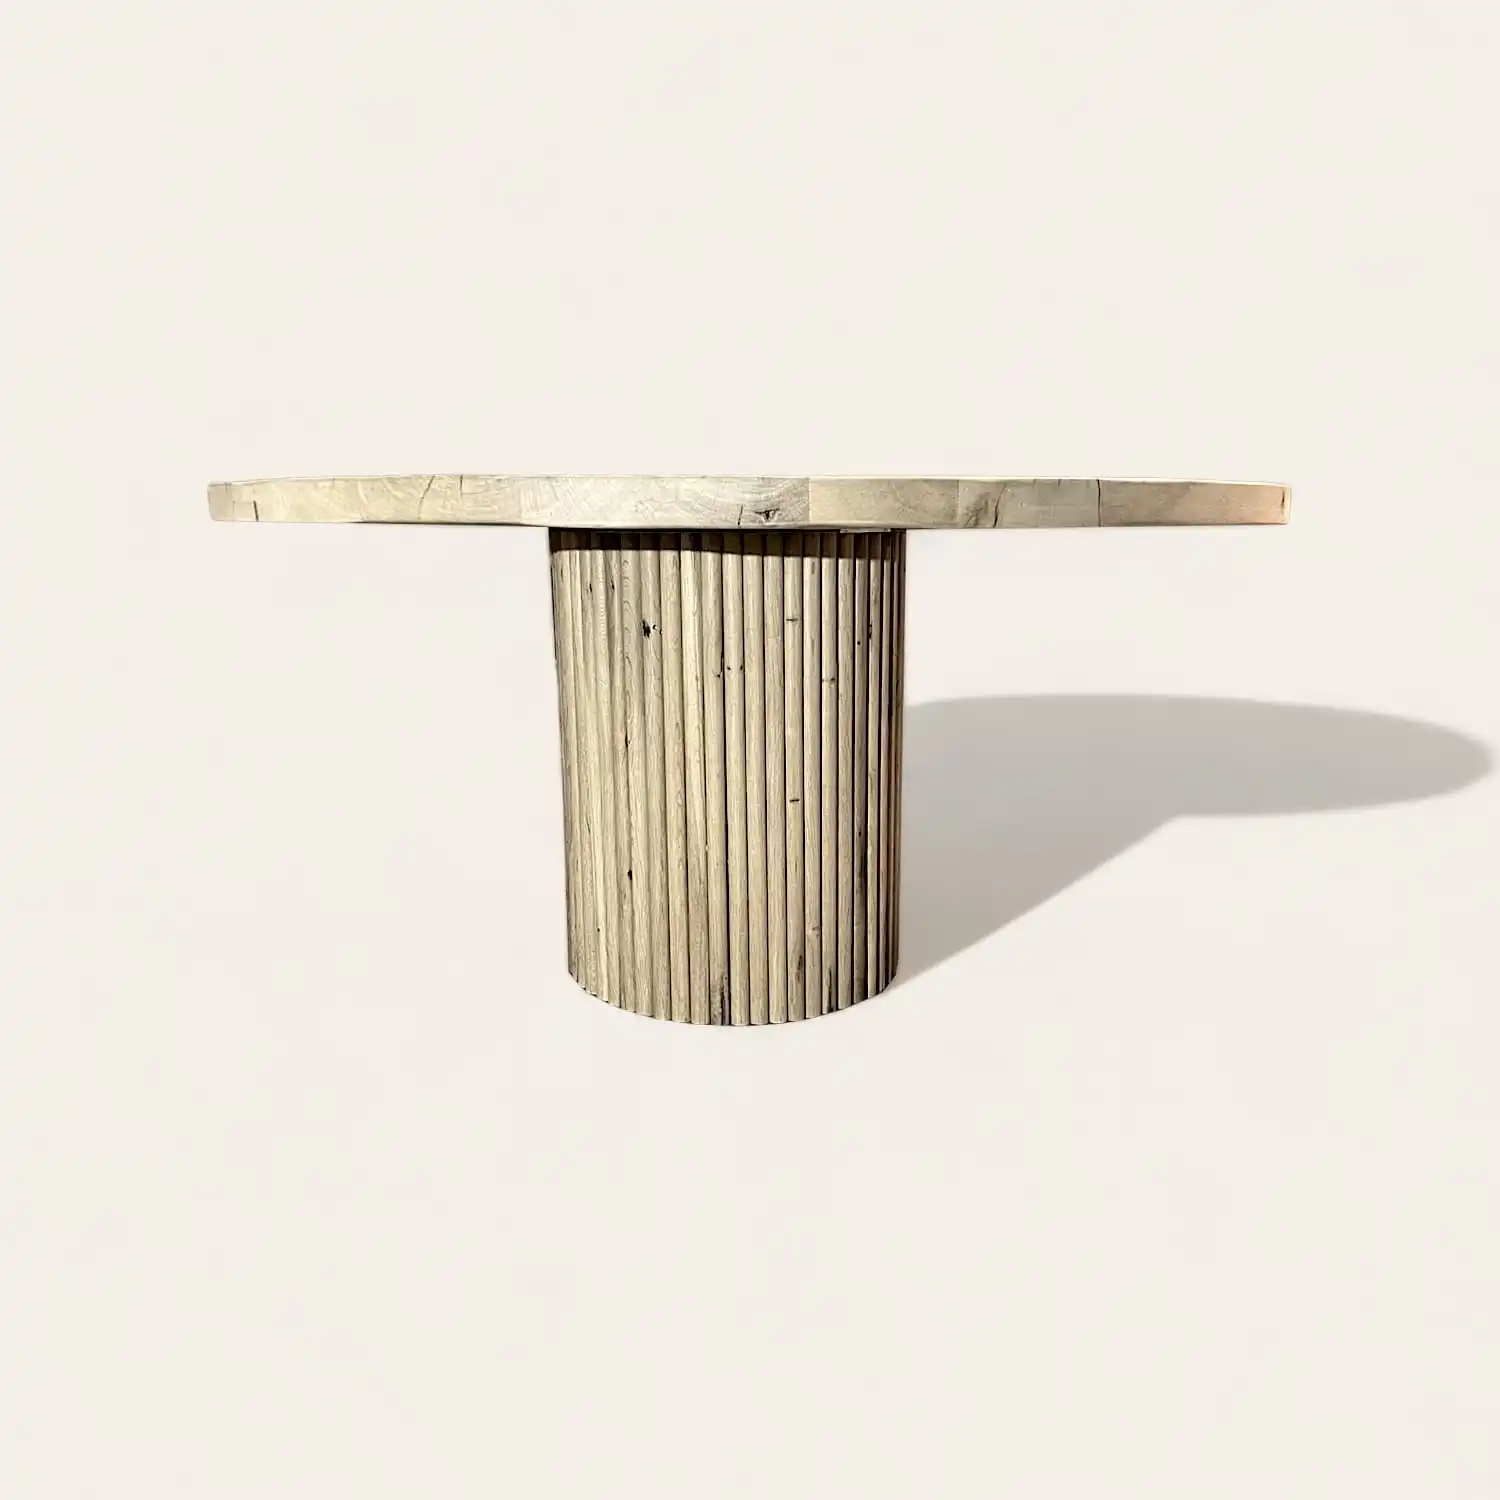  Une table ronde en bois recyclé avec un piètement en bois. 